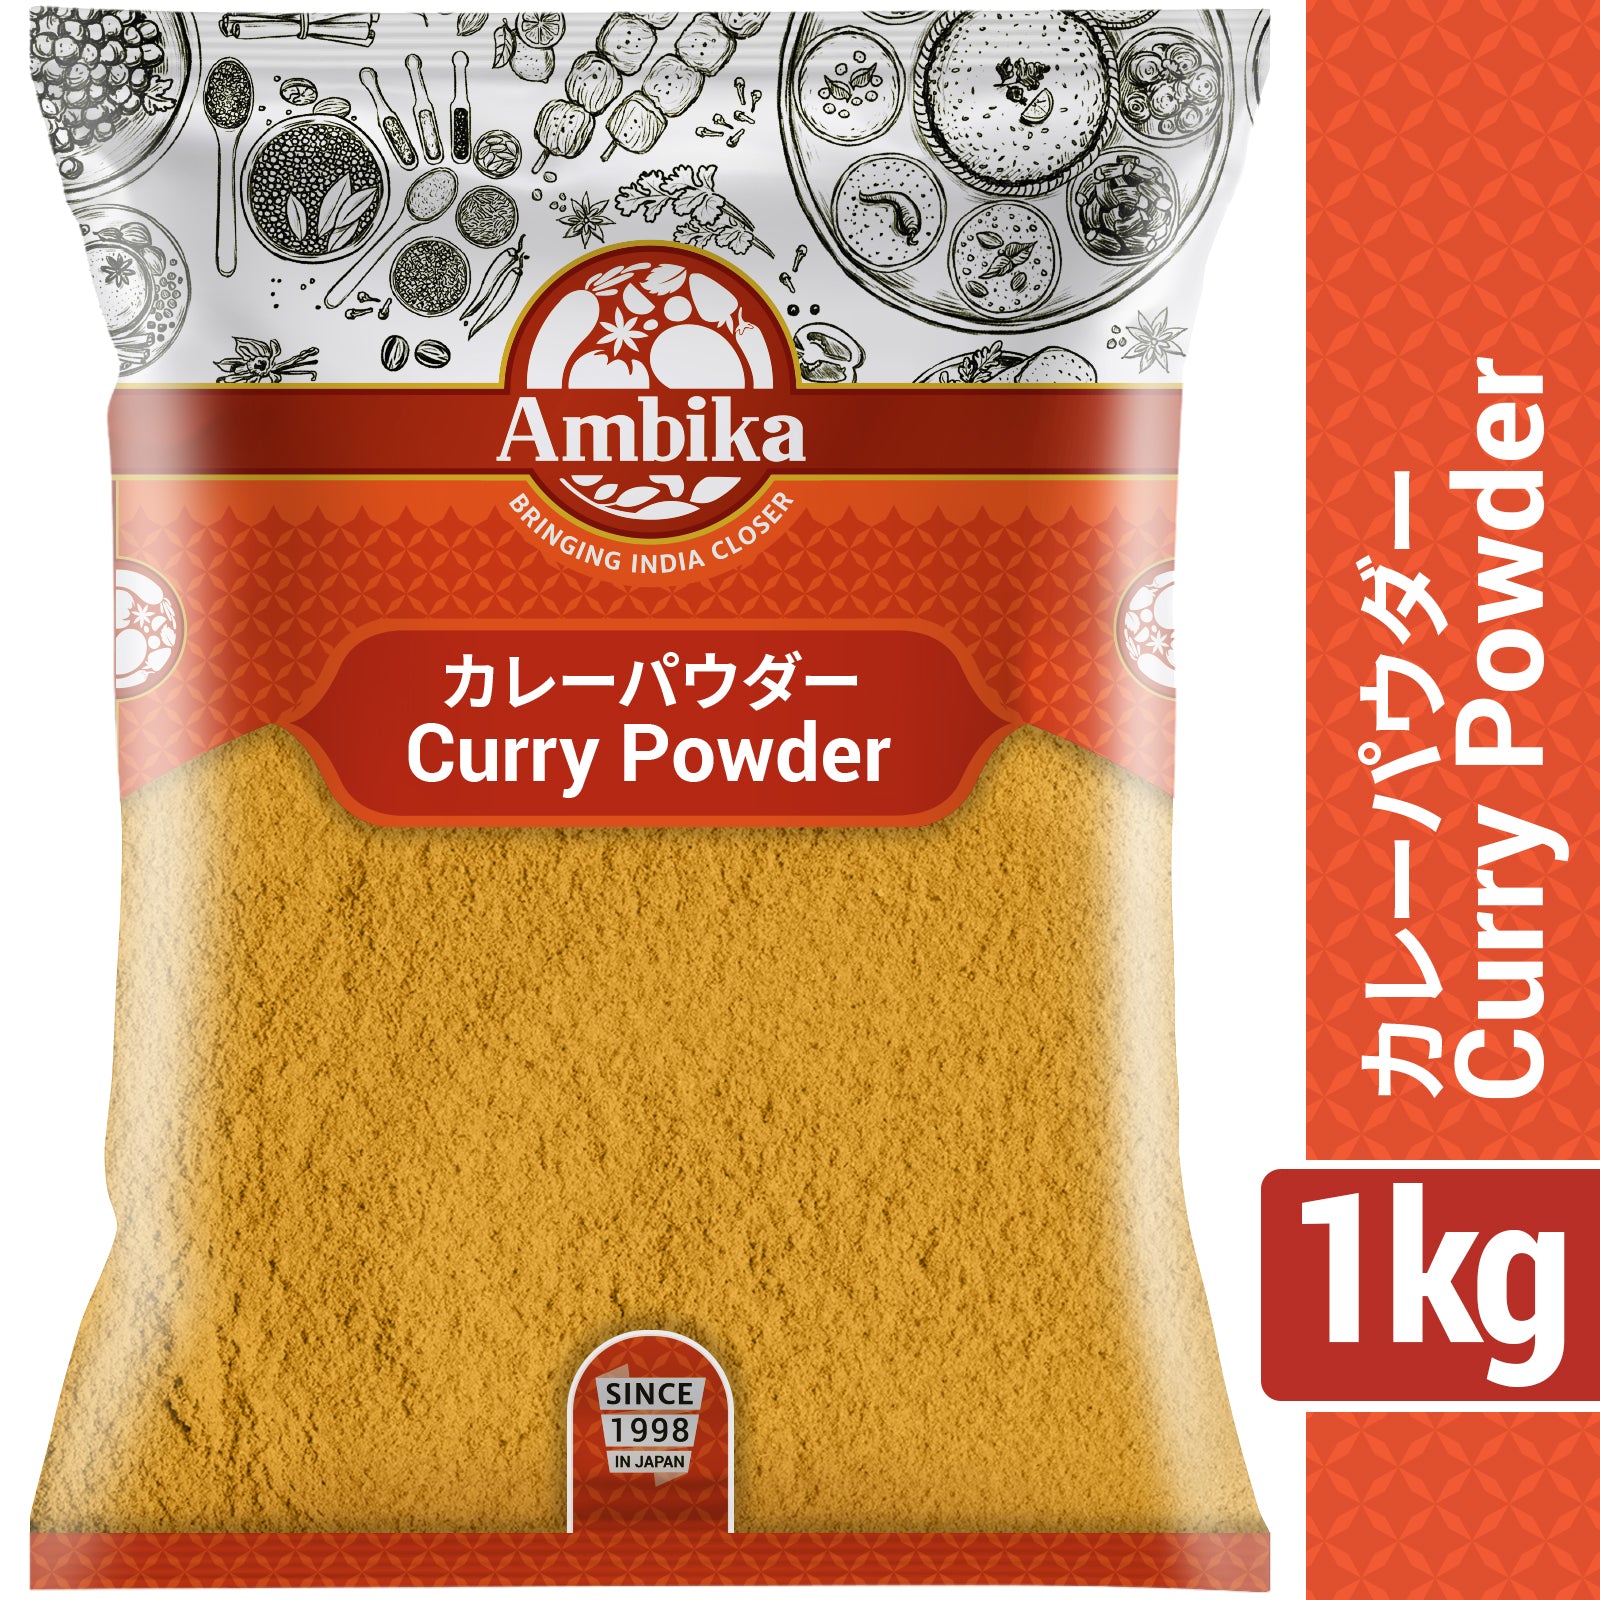 Ambika Curry Powder 1kg